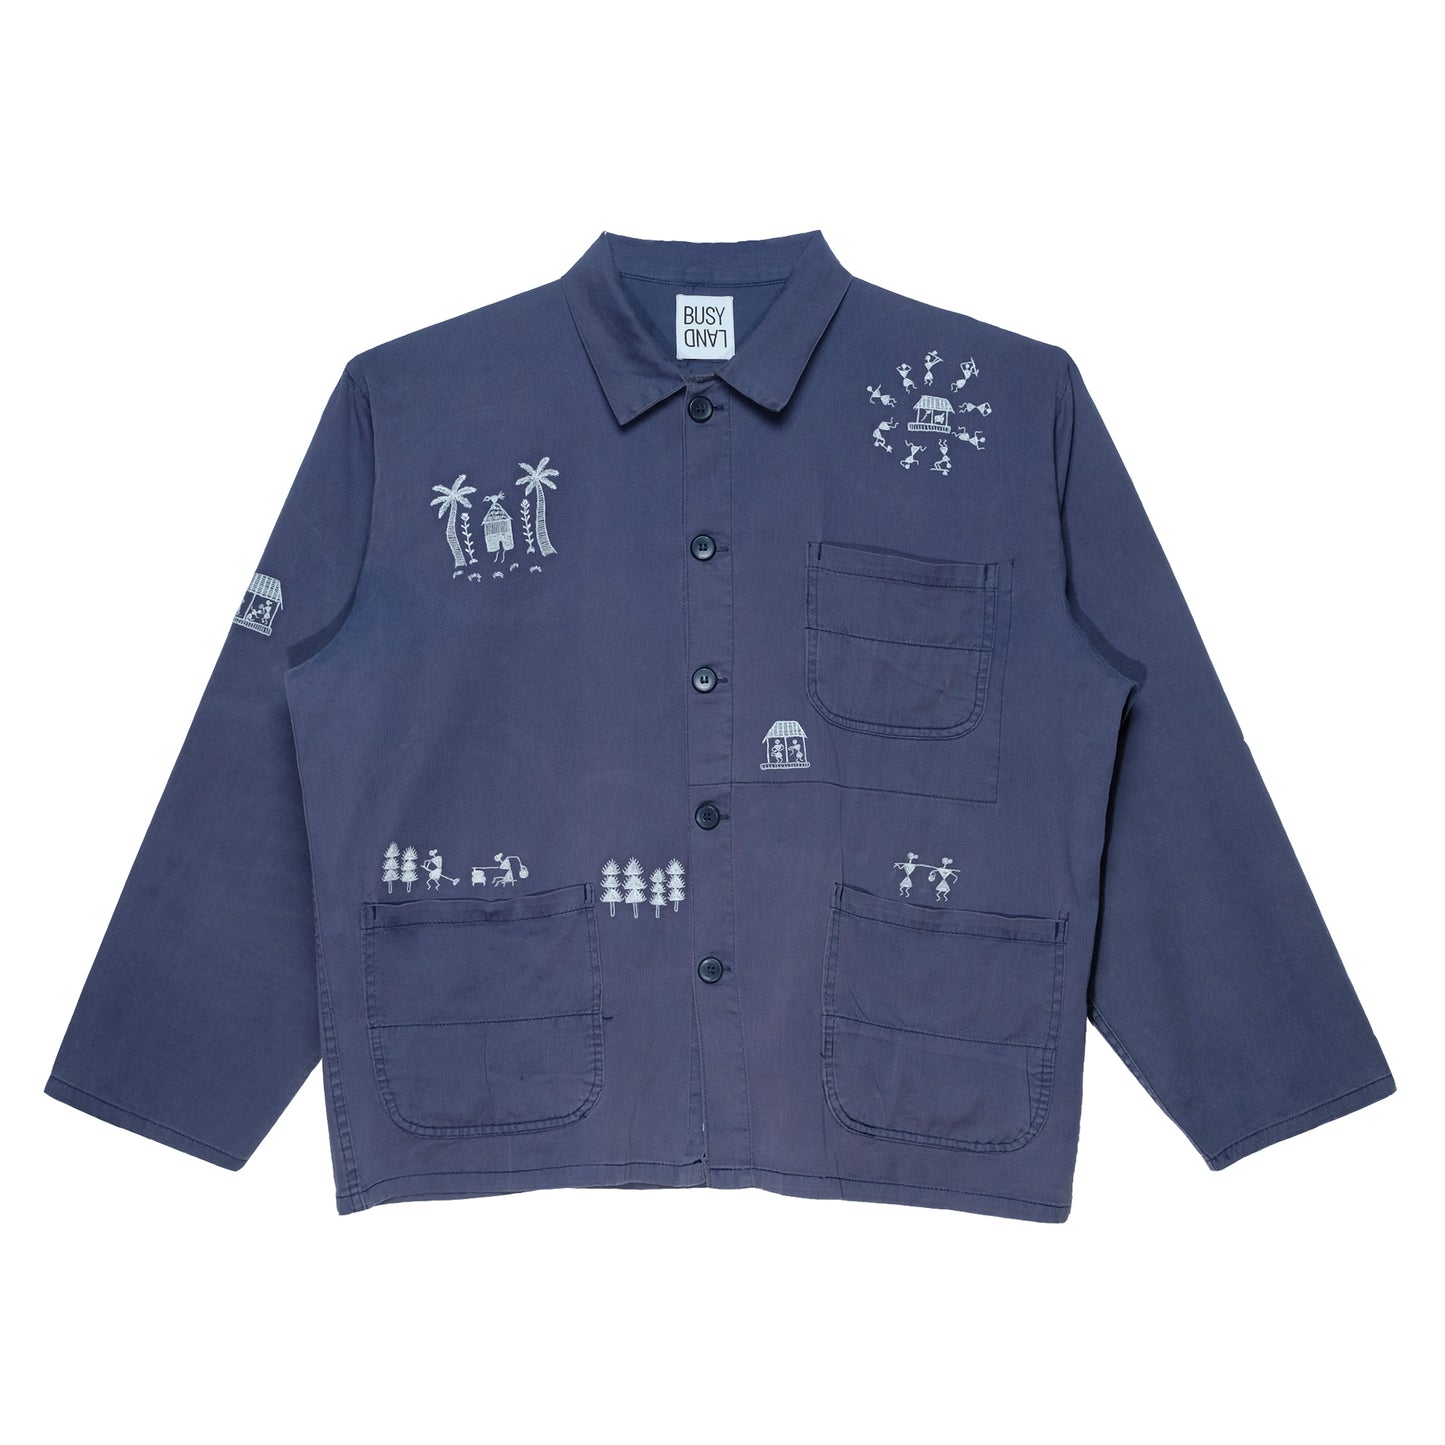 Upcycled Warli Embroidered Chore Jacket